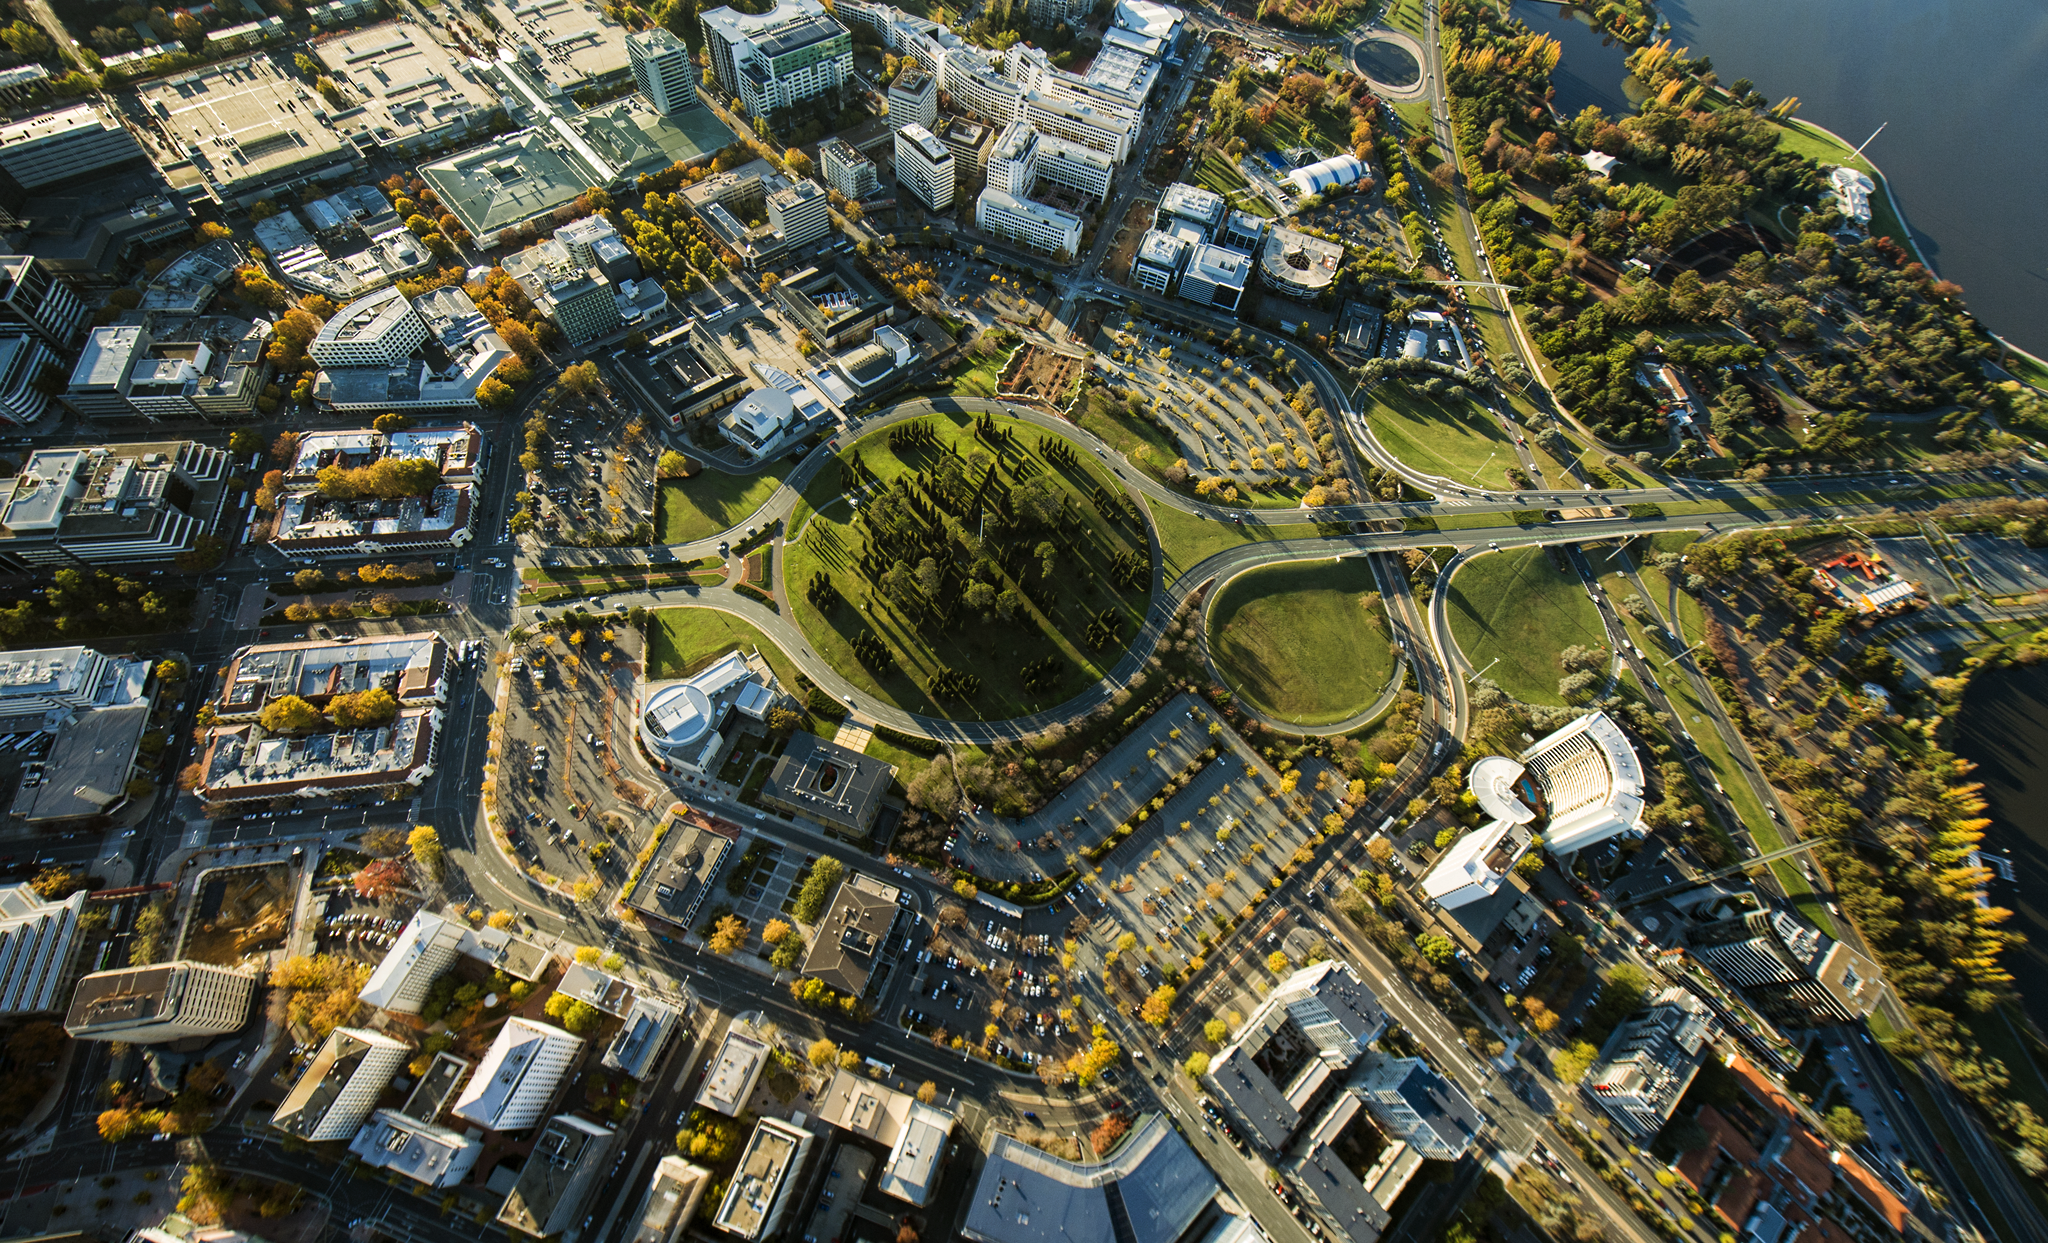 Thành phố Canberra là thành phố thủ đô của Úc. Thành phố được xây dựng bắt đầu từ năm 1913, dựa trên thiết kế của 2 kiến trúc sư người Mỹ Walter Burley Griffin và Marion Mahony Griffin. Thiết kế của thành phố chịu ảnh hưởng từ phong trào thành phố vườn, việc kết hợp các khu vực thực vật tự nhiên quan trọng trong kiến trúc thành phố khiến Canberra còn có tên gọi là “thủ đô bụi rậm“. 